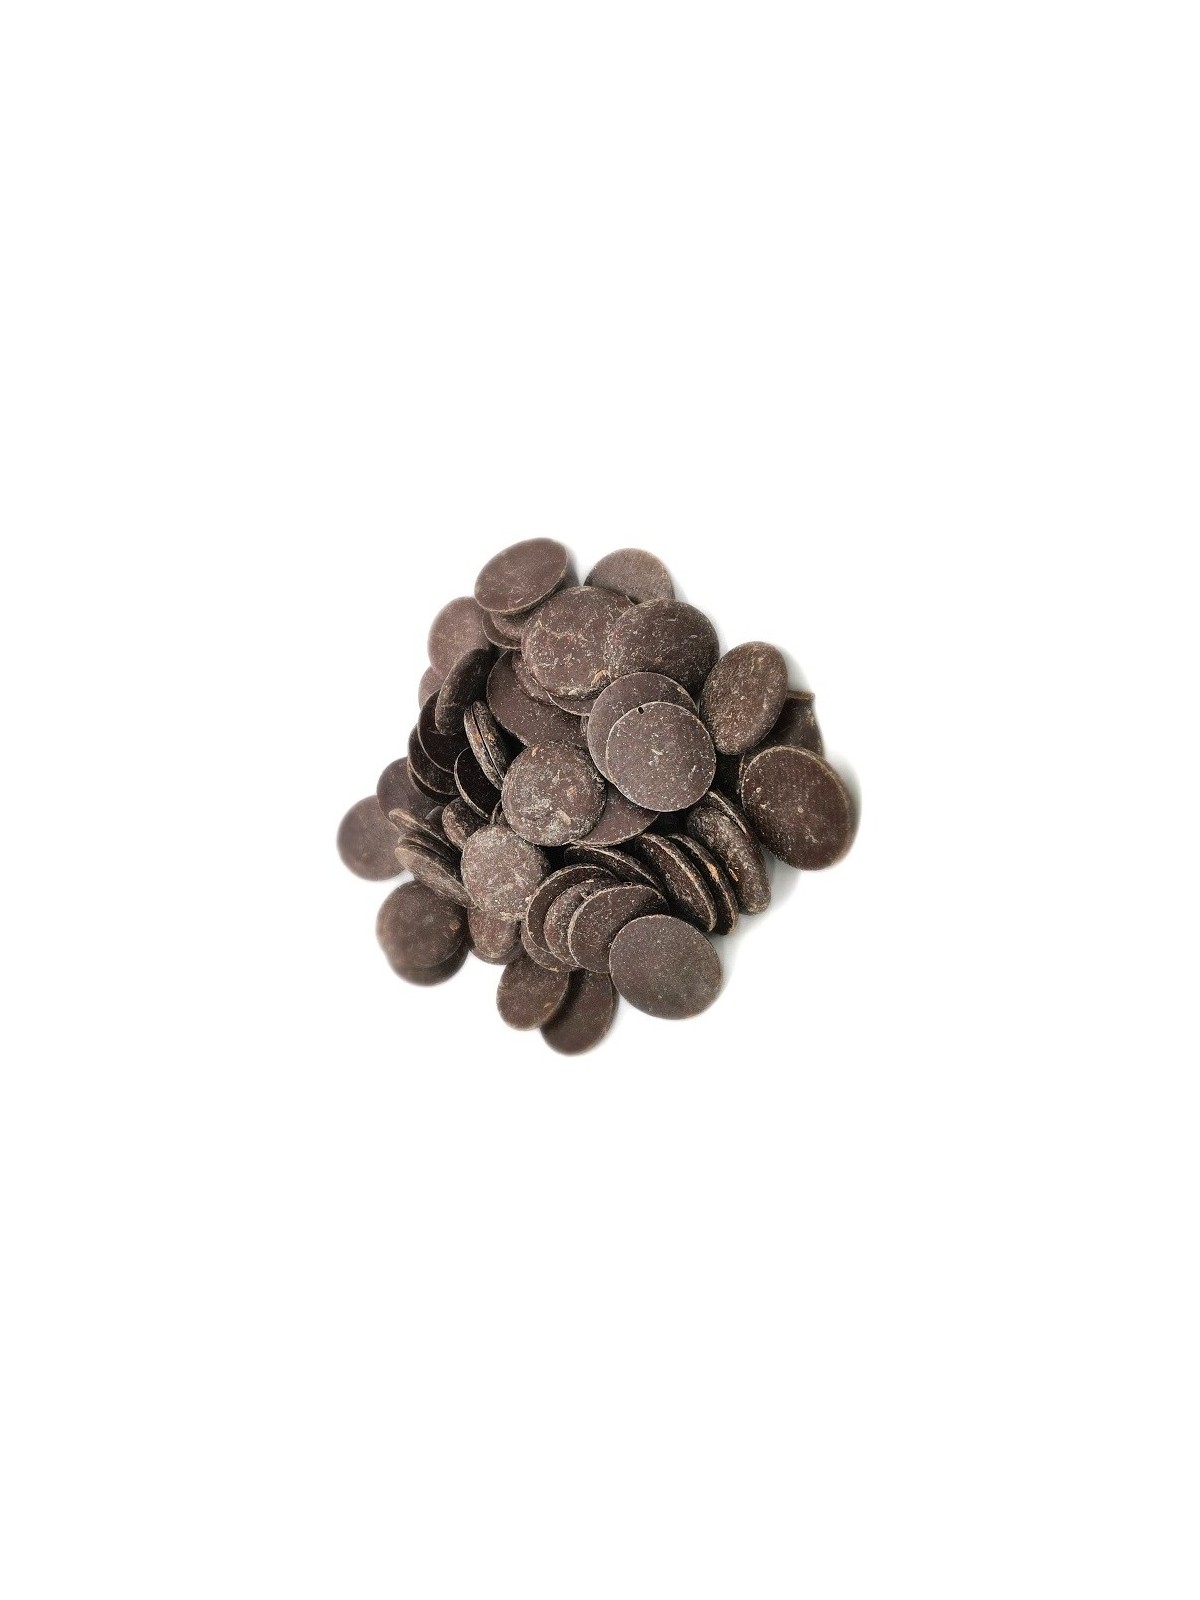 Dunkle Schokolade 48% Samen - dunkle Scheiben - 500 g